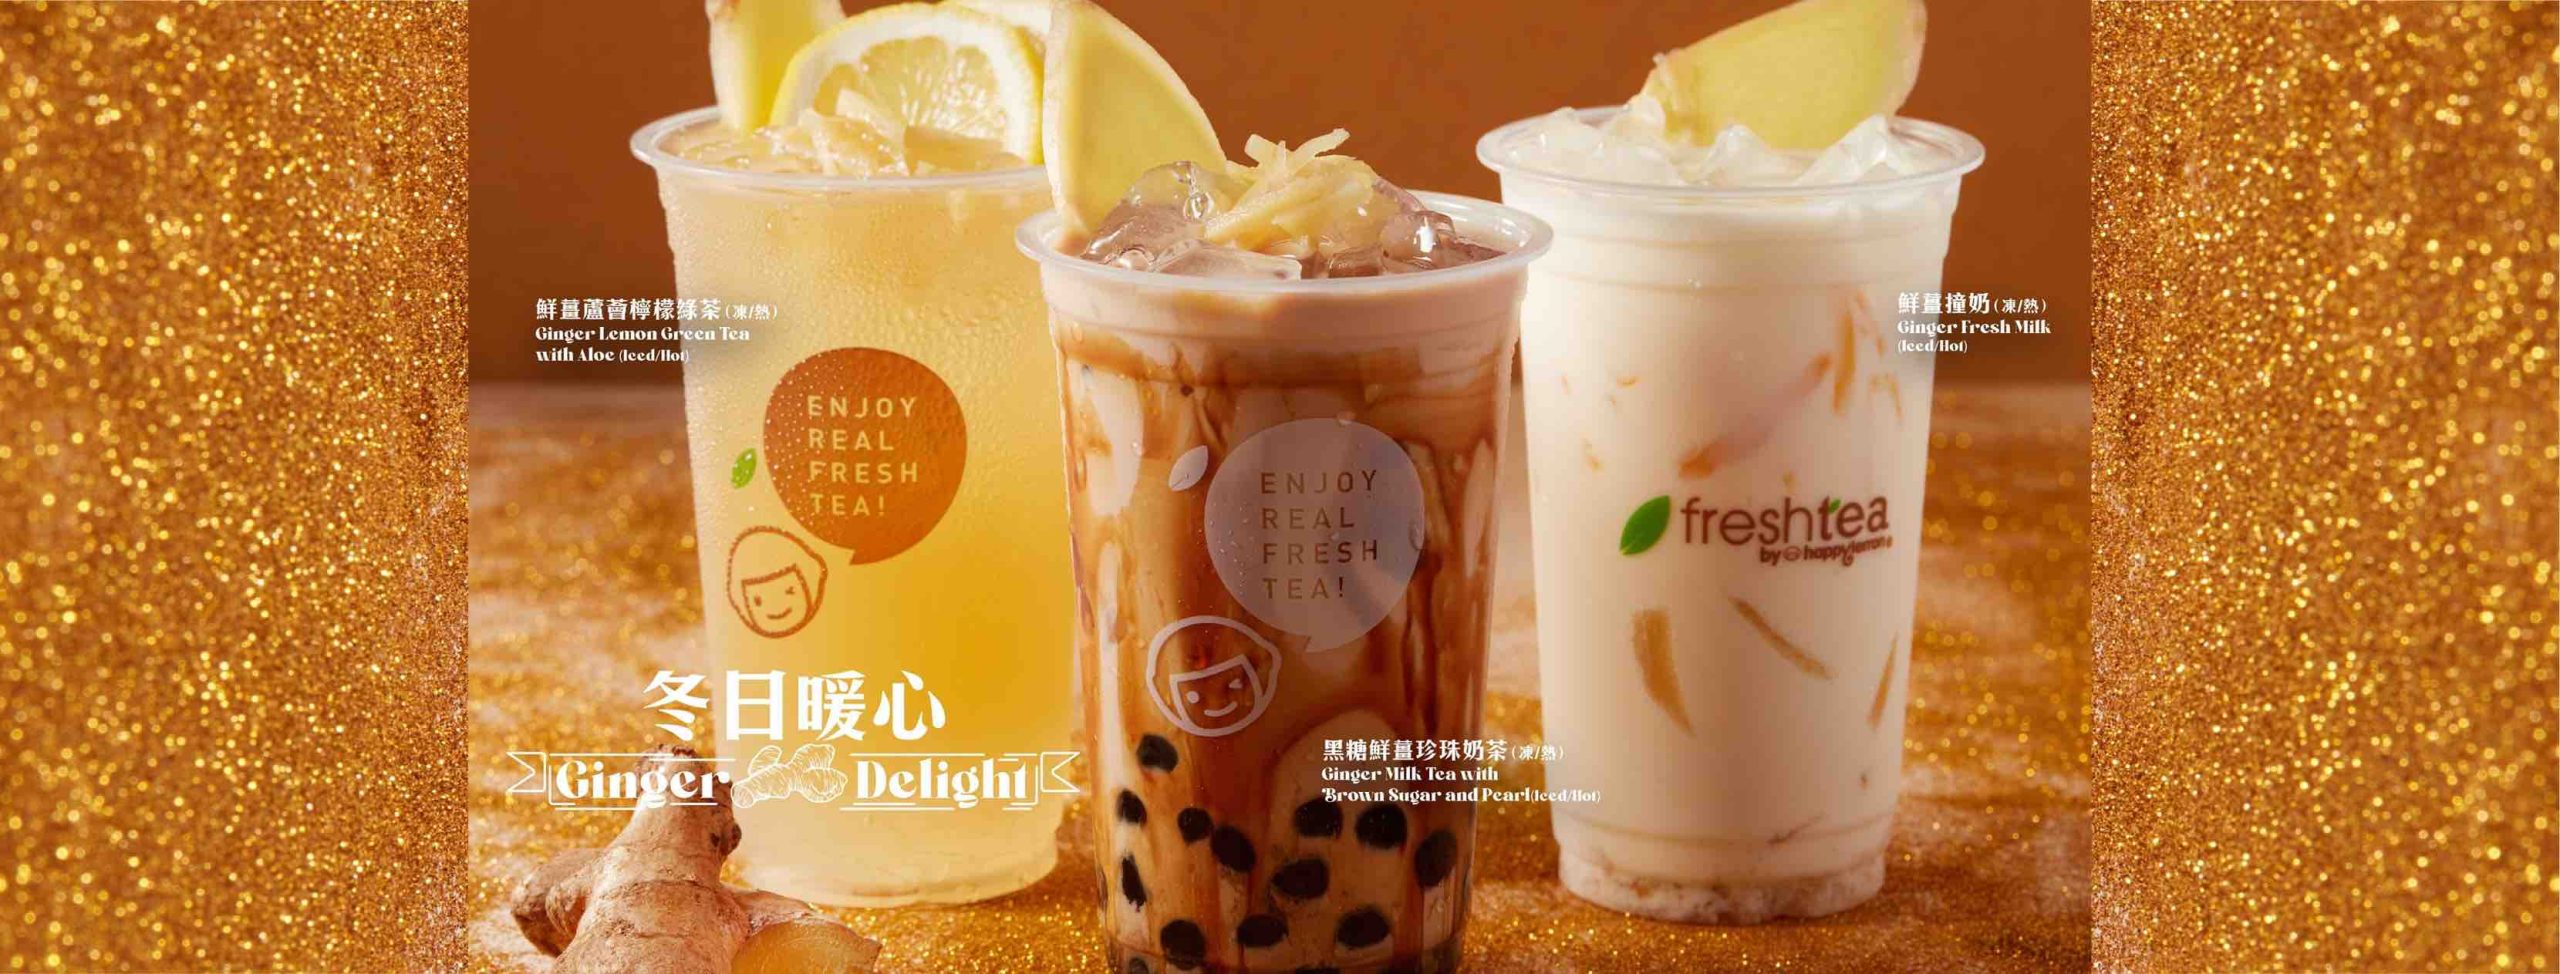 快樂檸檬 happylemon的特許經營香港區加盟店項目7